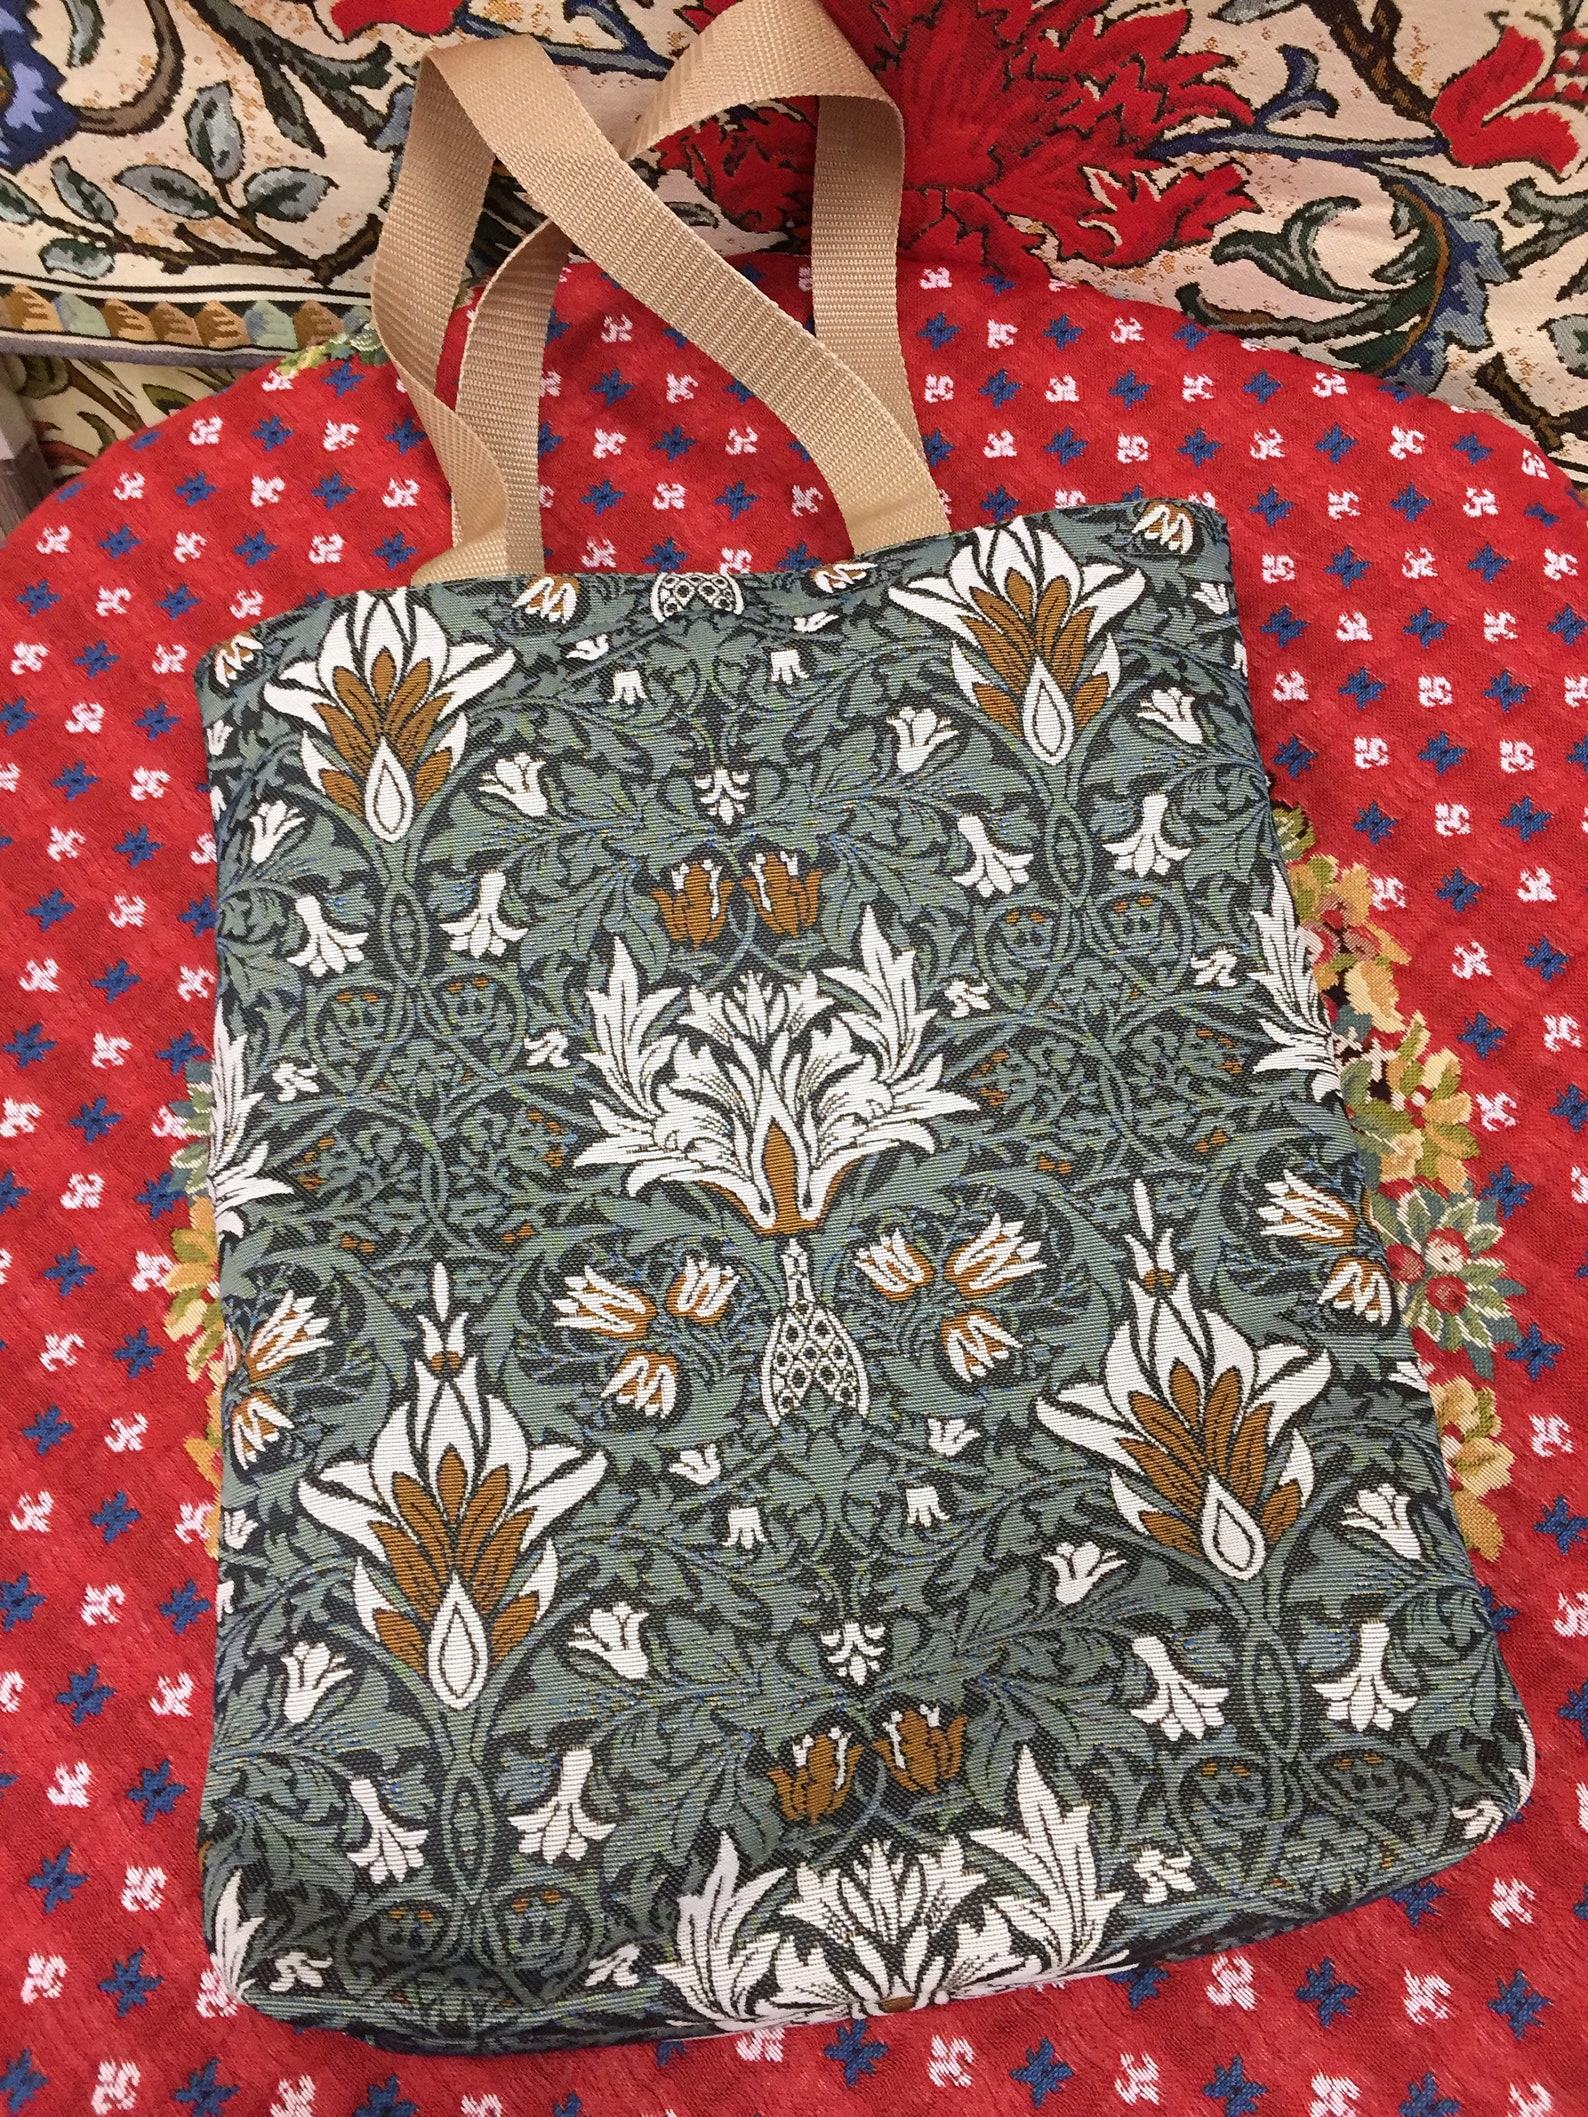 William Morris handbag-161342cm-37cmshoulder bag-woven | Etsy